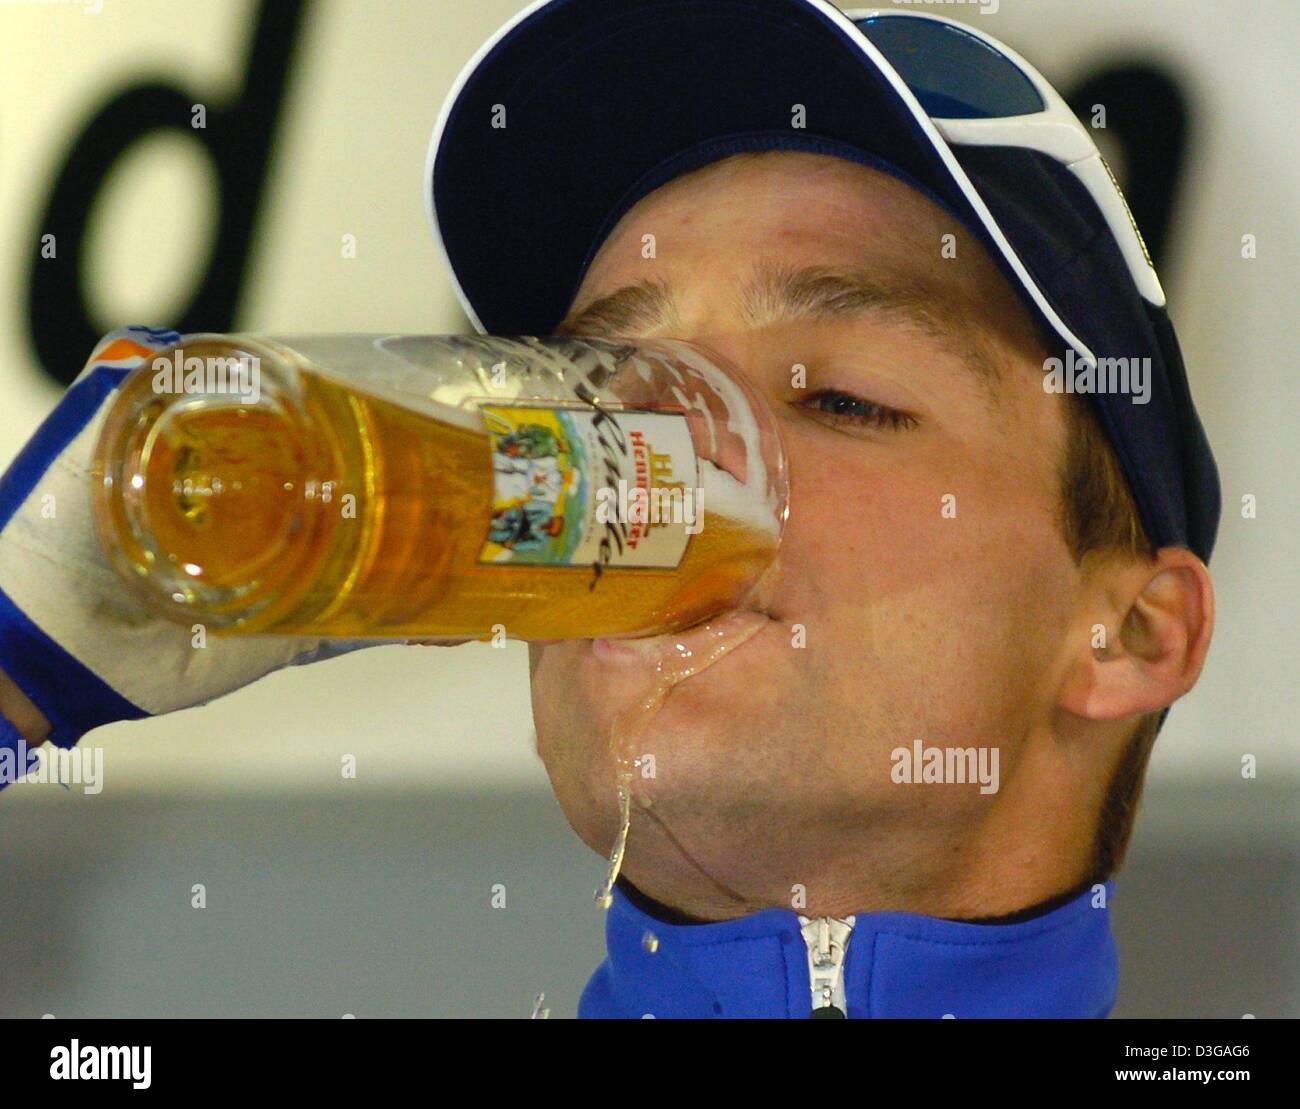 dpa-getranke-niederlandisch-radfahren-pro-karsten-kroon-von-team-rabobank-ein-glas-bier-nach-dem-gewinn-der-43-radrennen-rund-um-hohle-henninger-turm-rund-um-den-henninger-turm-in-frankfurt-main-1-mai-2004-kroon-gewann-das-rennen-vor-deutschen-radfahren-pro-danilo-hondo-des-team-gerolsteiner-und-belgischer-radrennfahrer-johan-coenen-des-team-mrbookmakercom-d3gag6.jpg